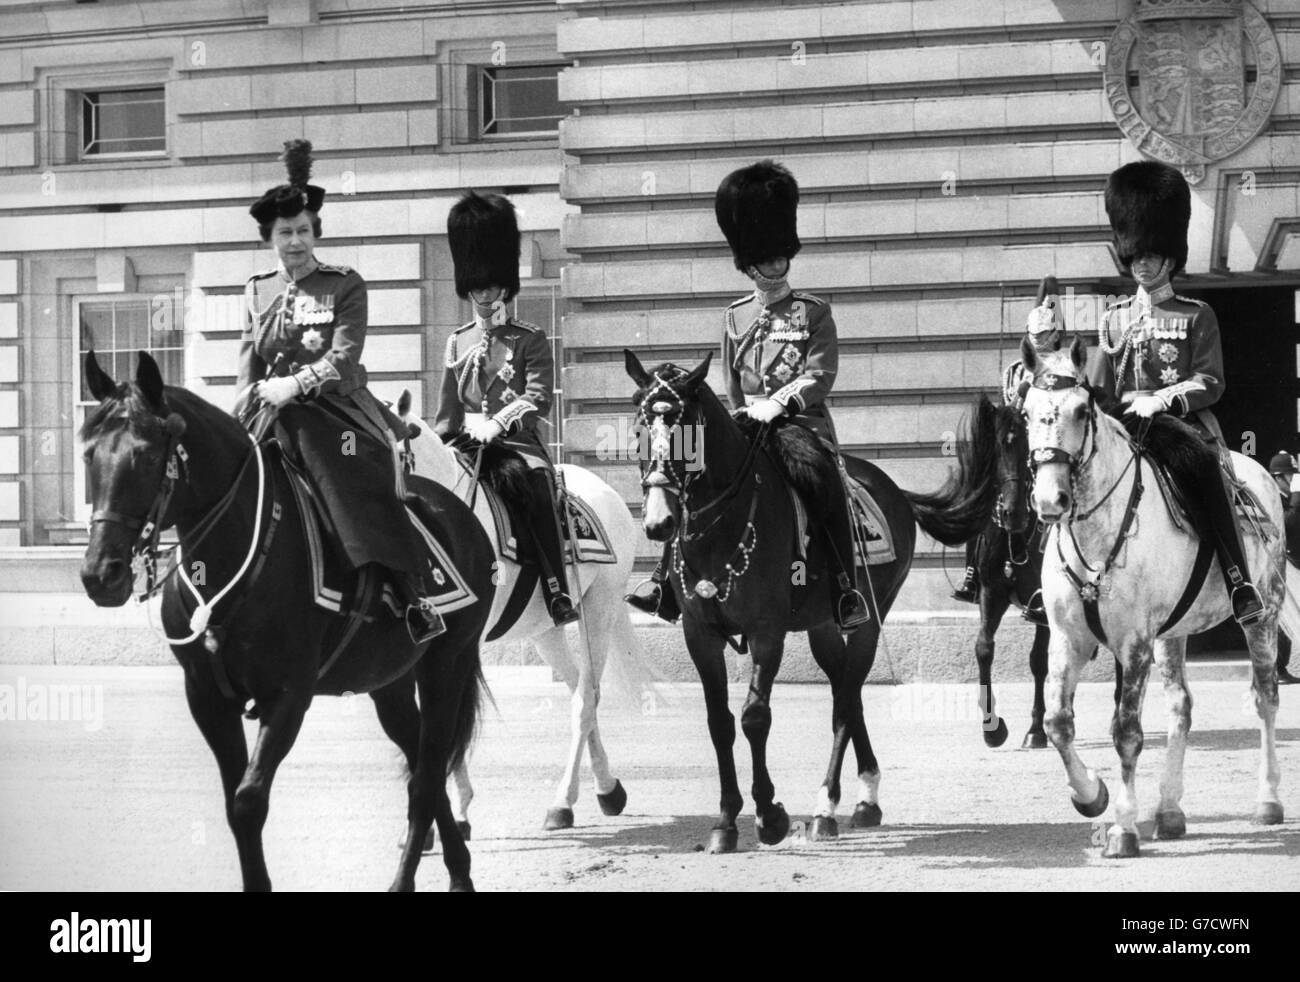 La reine Elizabeth II, sous l'uniforme du colonel en chef Coldstream Guards, se déplace en selle sur la jument birmane noire lorsqu'elle quitte le palais de Buckingham pour prendre le salut à la cérémonie de Trooping the Color sur la parade des gardes à cheval. Elle est accompagnée du prince Charles, du prince Philip et du duc de Kent. *Numériser à partir de l'impression. Version haute résolution disponible sur demande* Banque D'Images